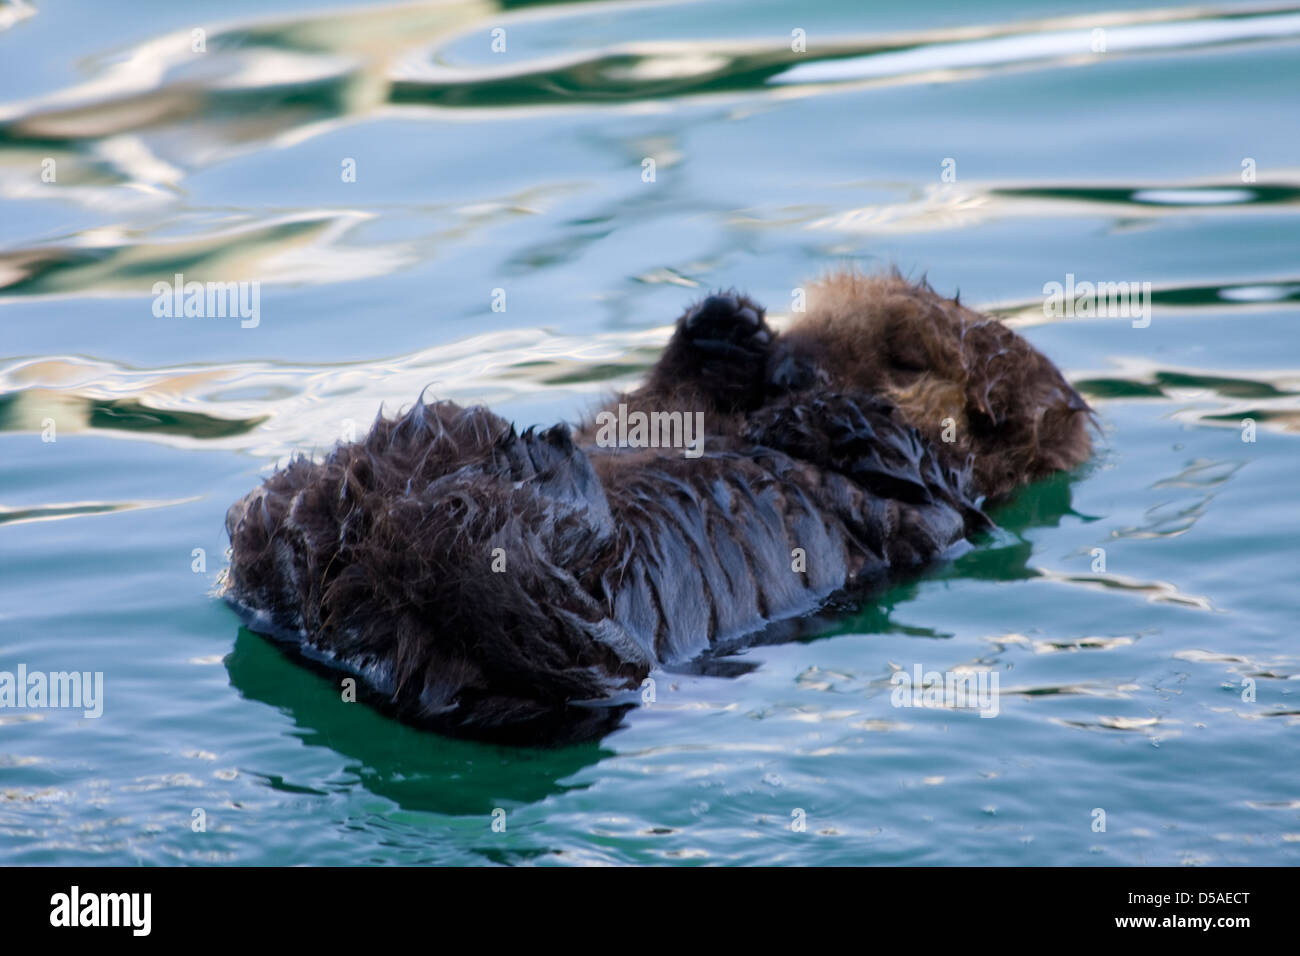 Ein schlafendes Kind Bräutigam Sea Otter schwebend im Wasser während seine Mutter sich in der Nähe. Stockfoto